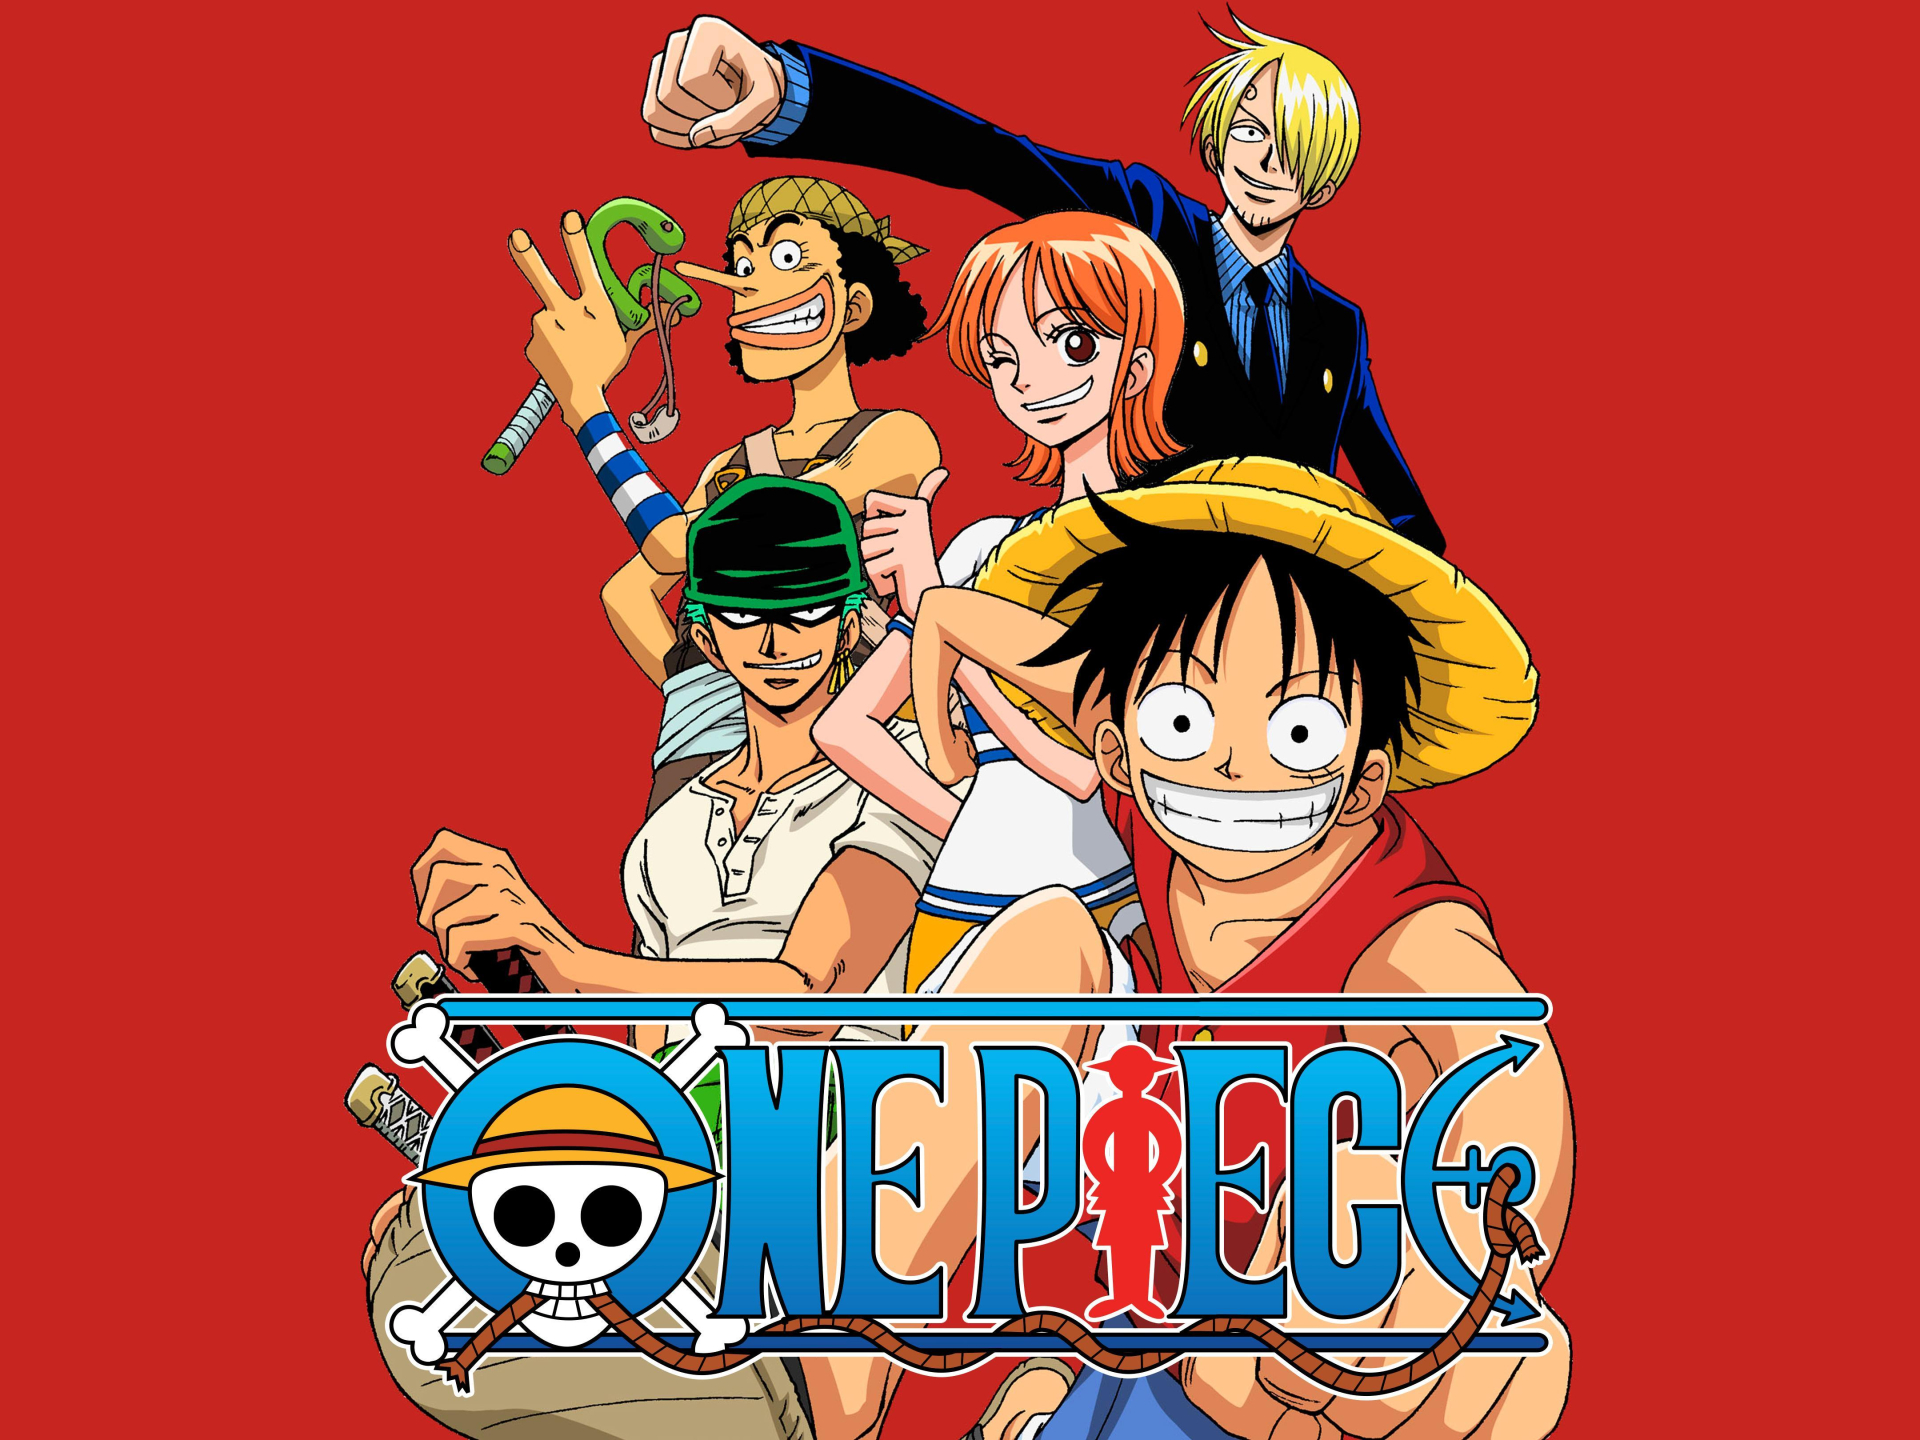 Được biết nguồn gốc xuất phát của trend này liên quan đến bộ truyện 'One Piece' nổi tiếng